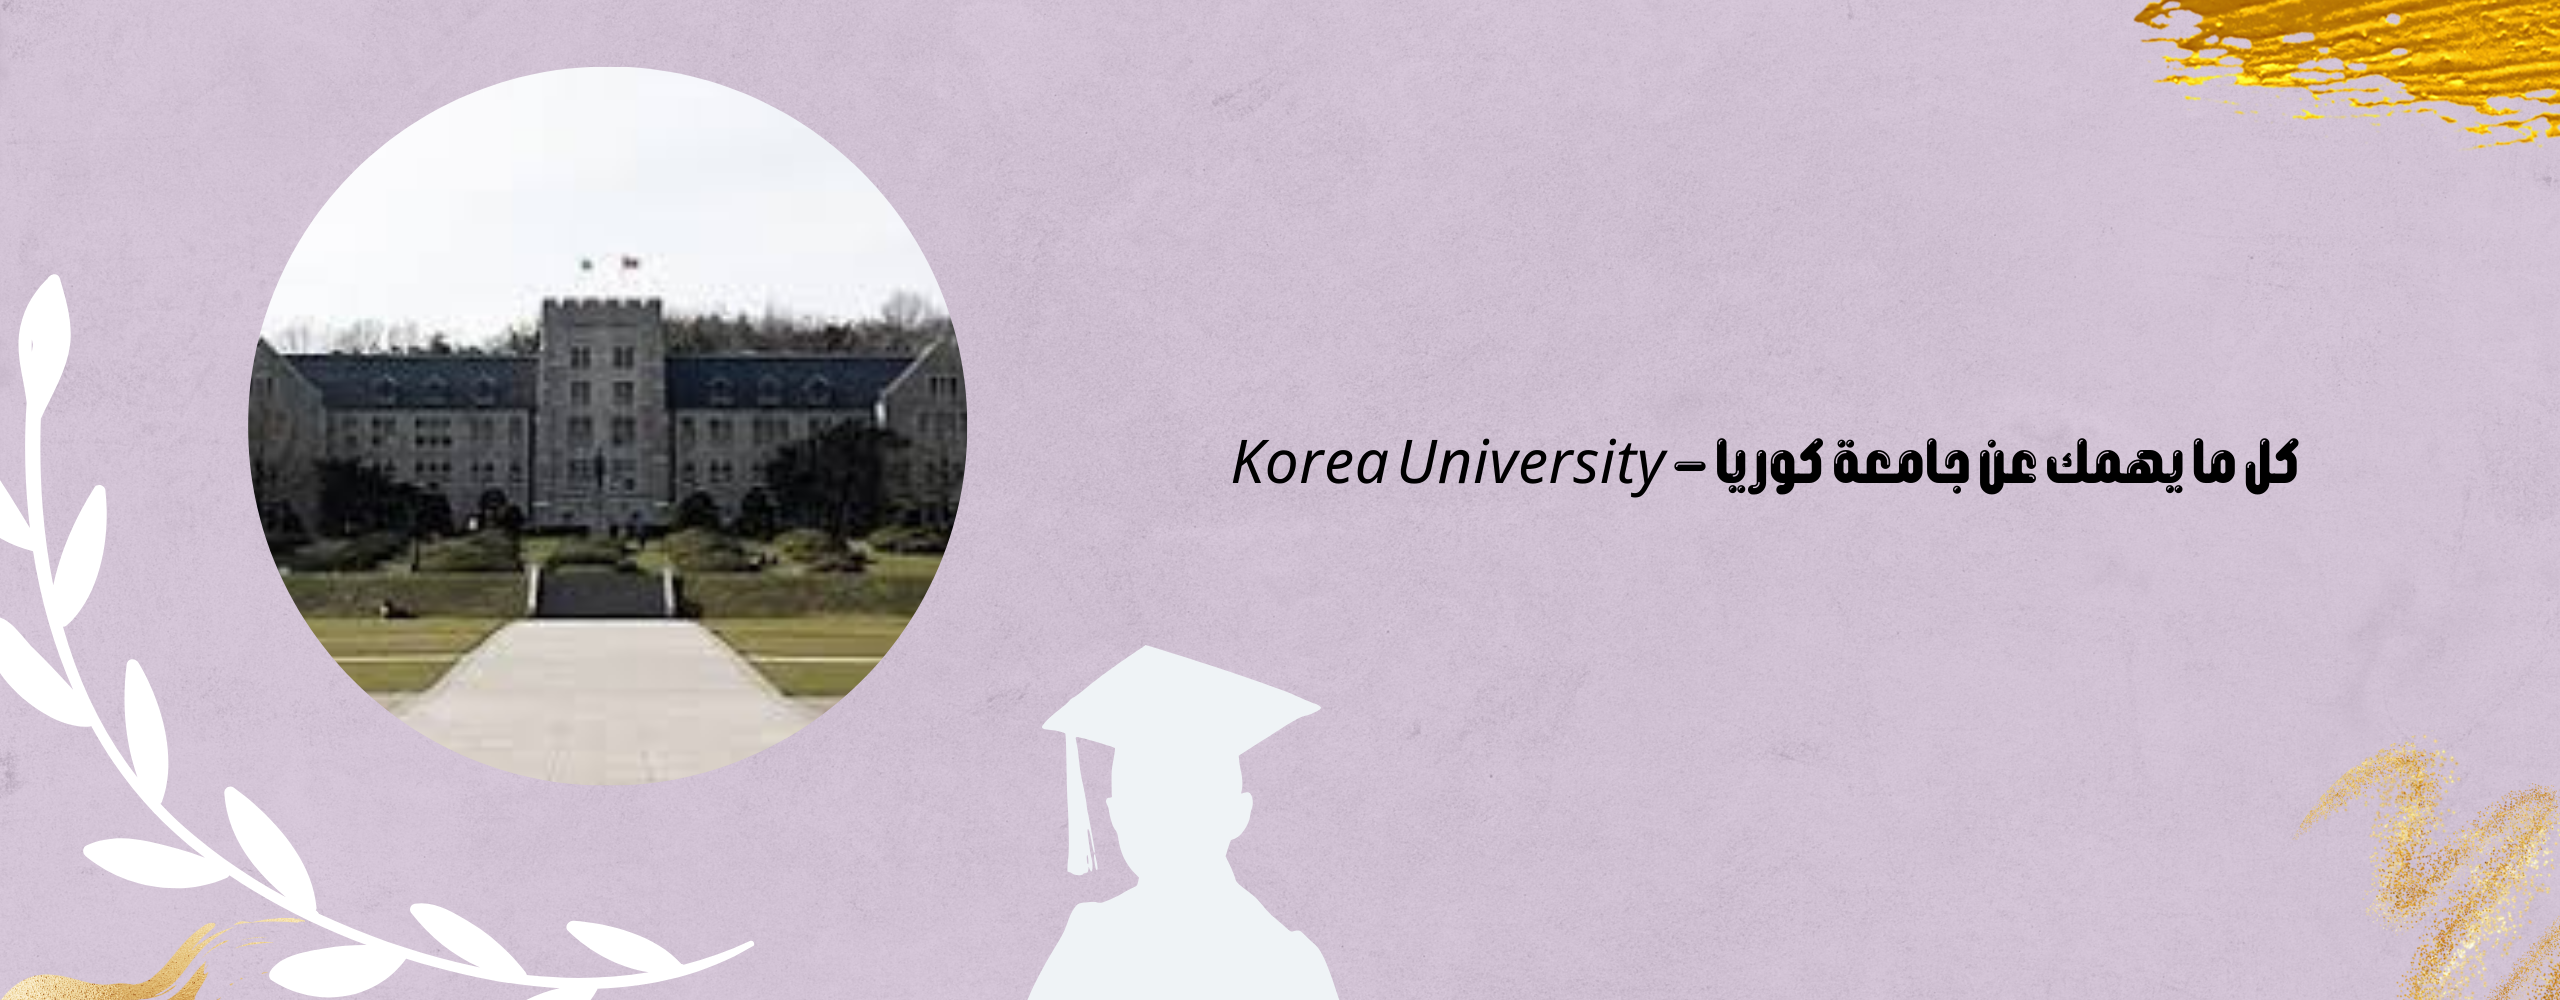 جامعة كوريا